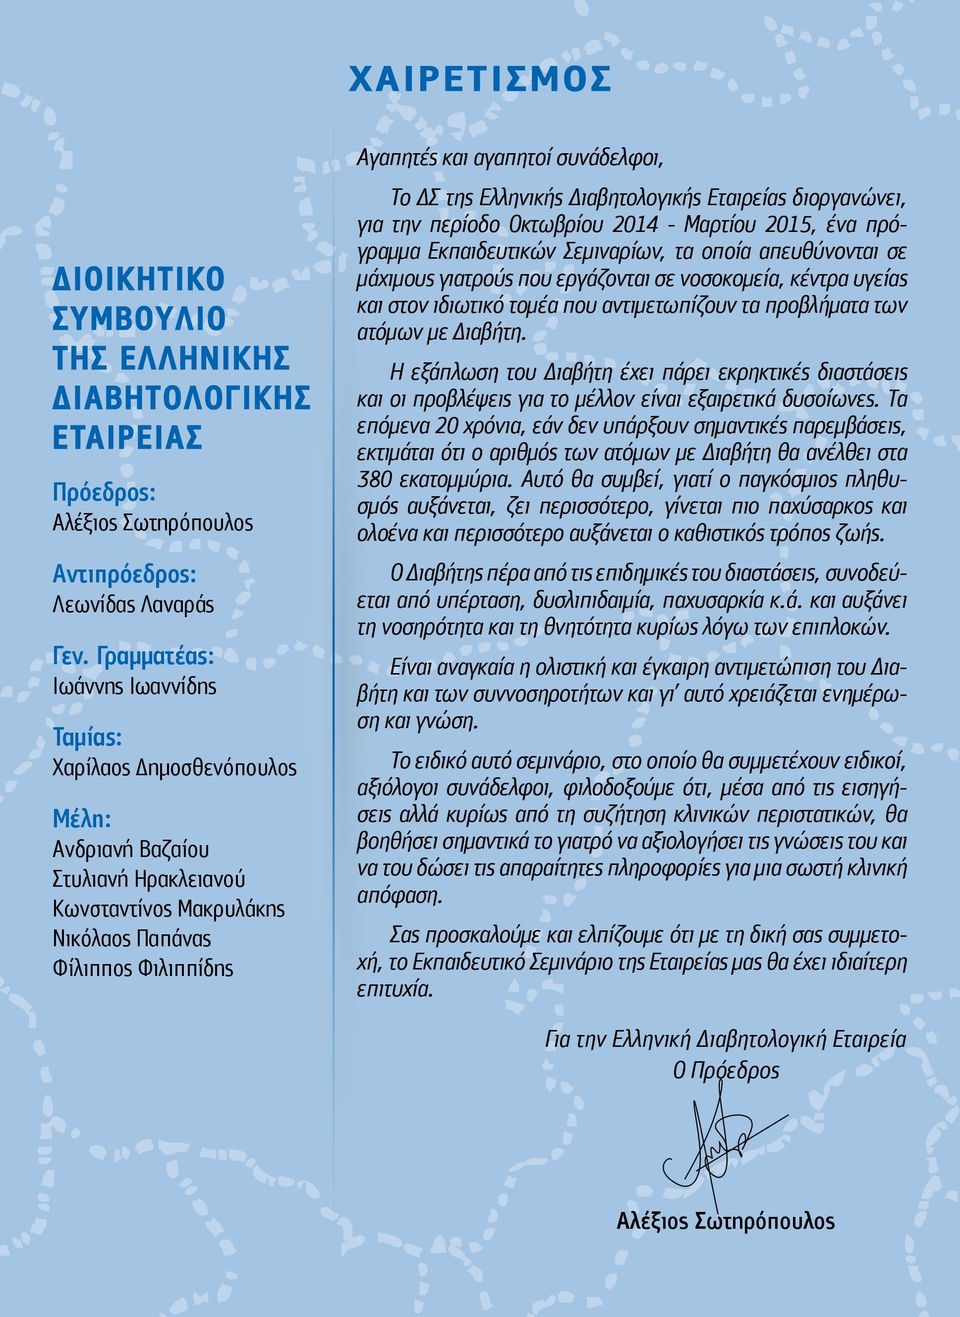 συνάδελφοι, Το ΔΣ της Ελληνικής Διαβητολογικής Εταιρείας διοργανώνει, για την περίοδο Οκτωβρίου 2014 - Μαρτίου 2015, ένα πρόγραμμα Εκπαιδευτικών Σεμιναρίων, τα οποία απευθύνονται σε μάχιμους γιατρούς